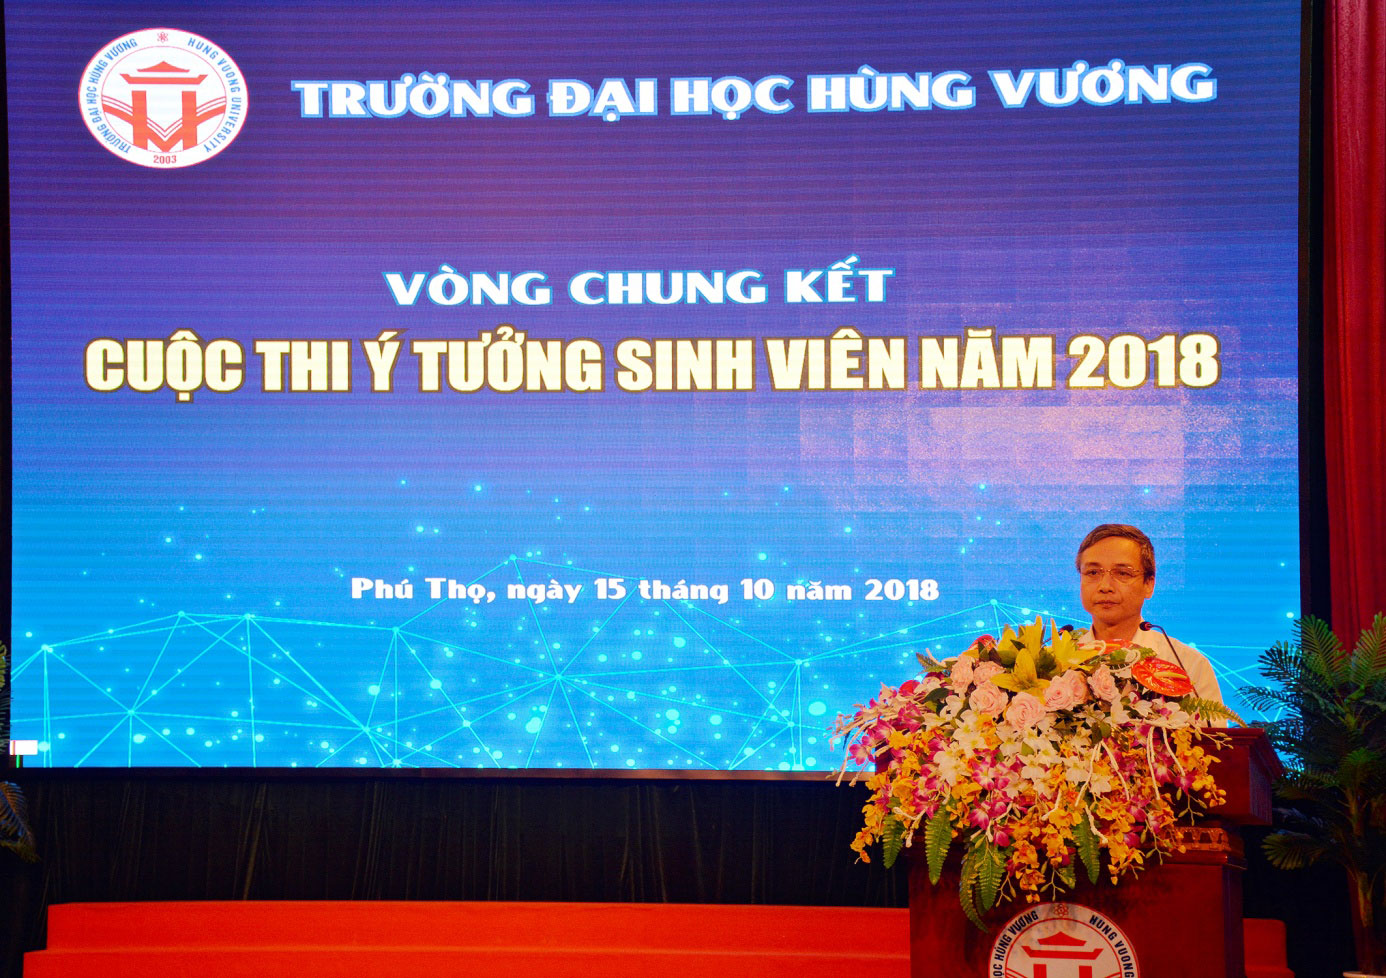 Chung ket cuoc thi “Y tuong sinh vien Truong Dai hoc Hung Vuong” nam 2018